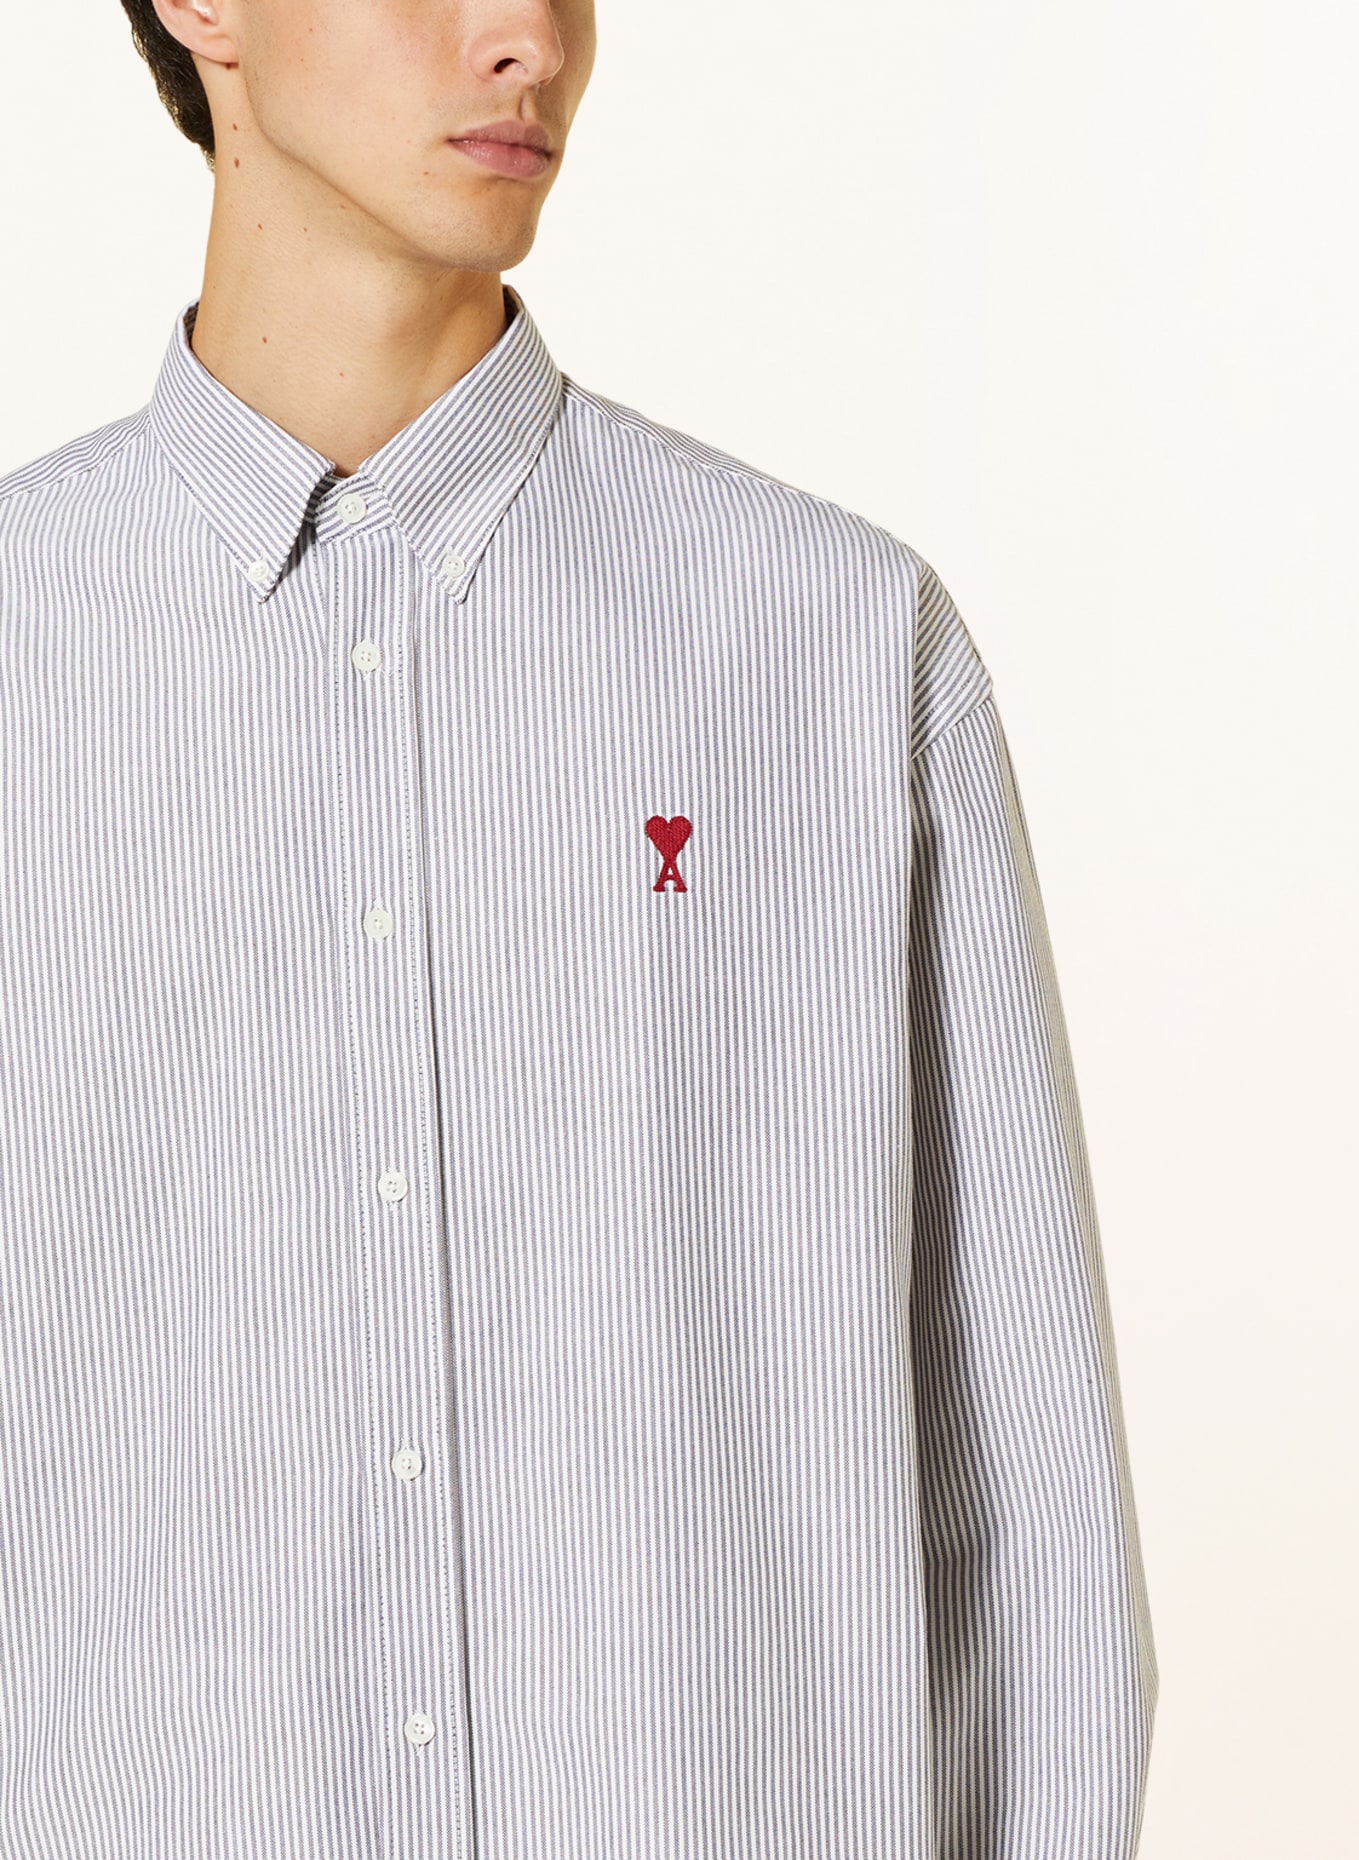 AMI PARIS Shirt comfort fit, Color: GRAY/ WHITE (Image 4)